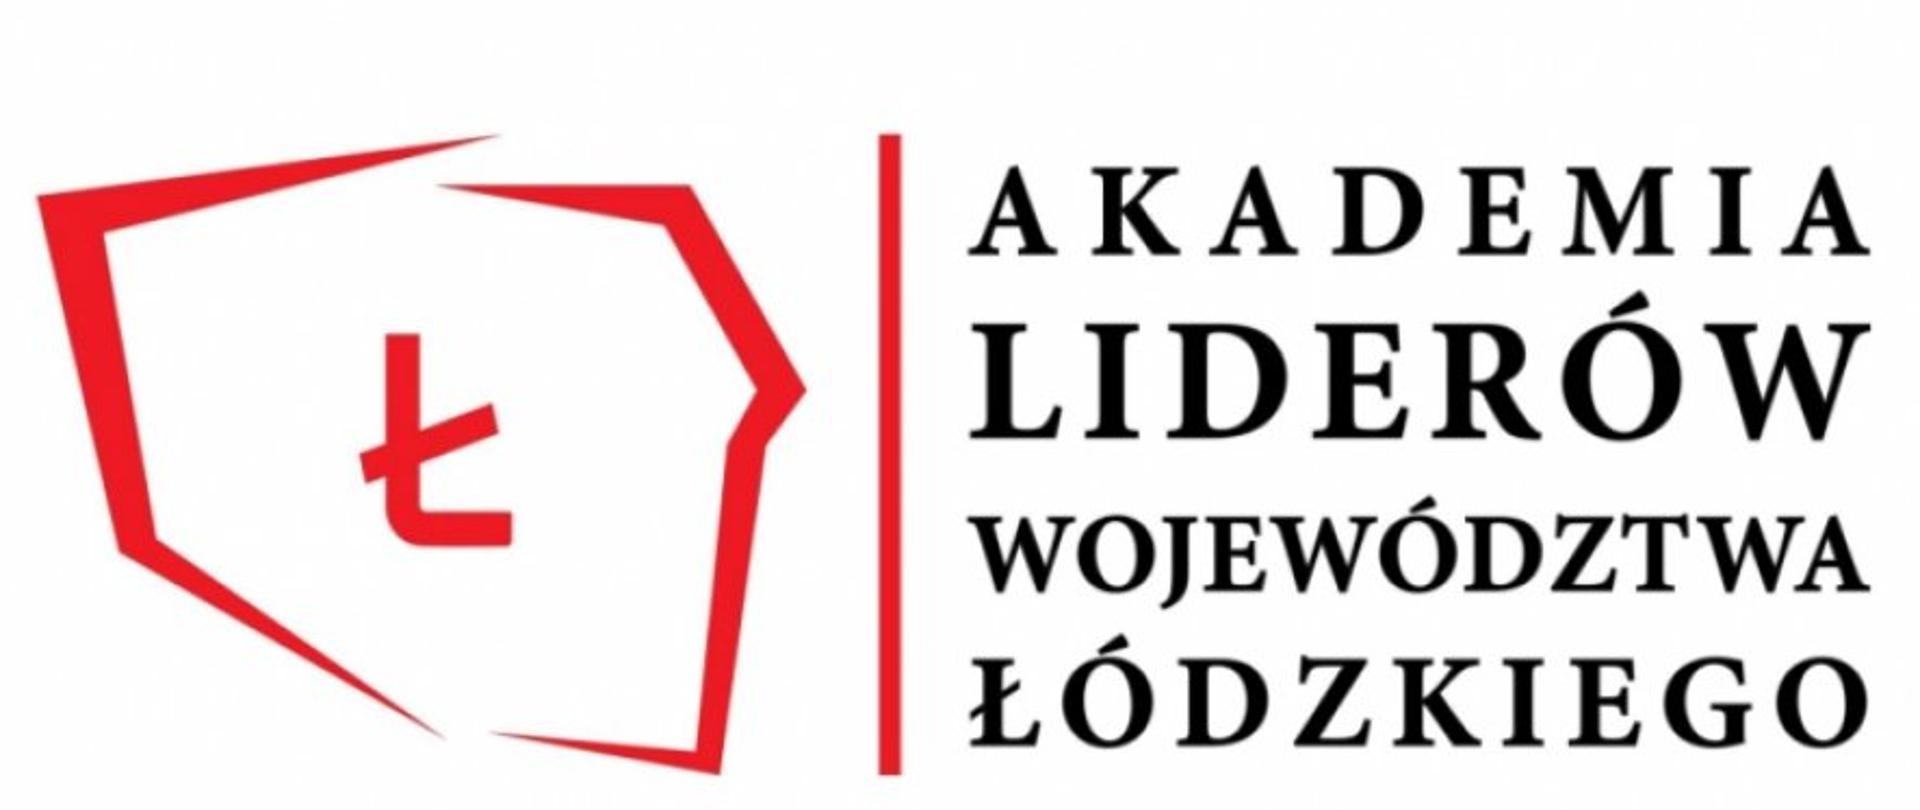 Po lewej czerwone granice Polski z literą "Ł" w środku, obok pionowa czerwona kreska i po prawej napis "Akademia Liderów Województwa Łódzkiego"